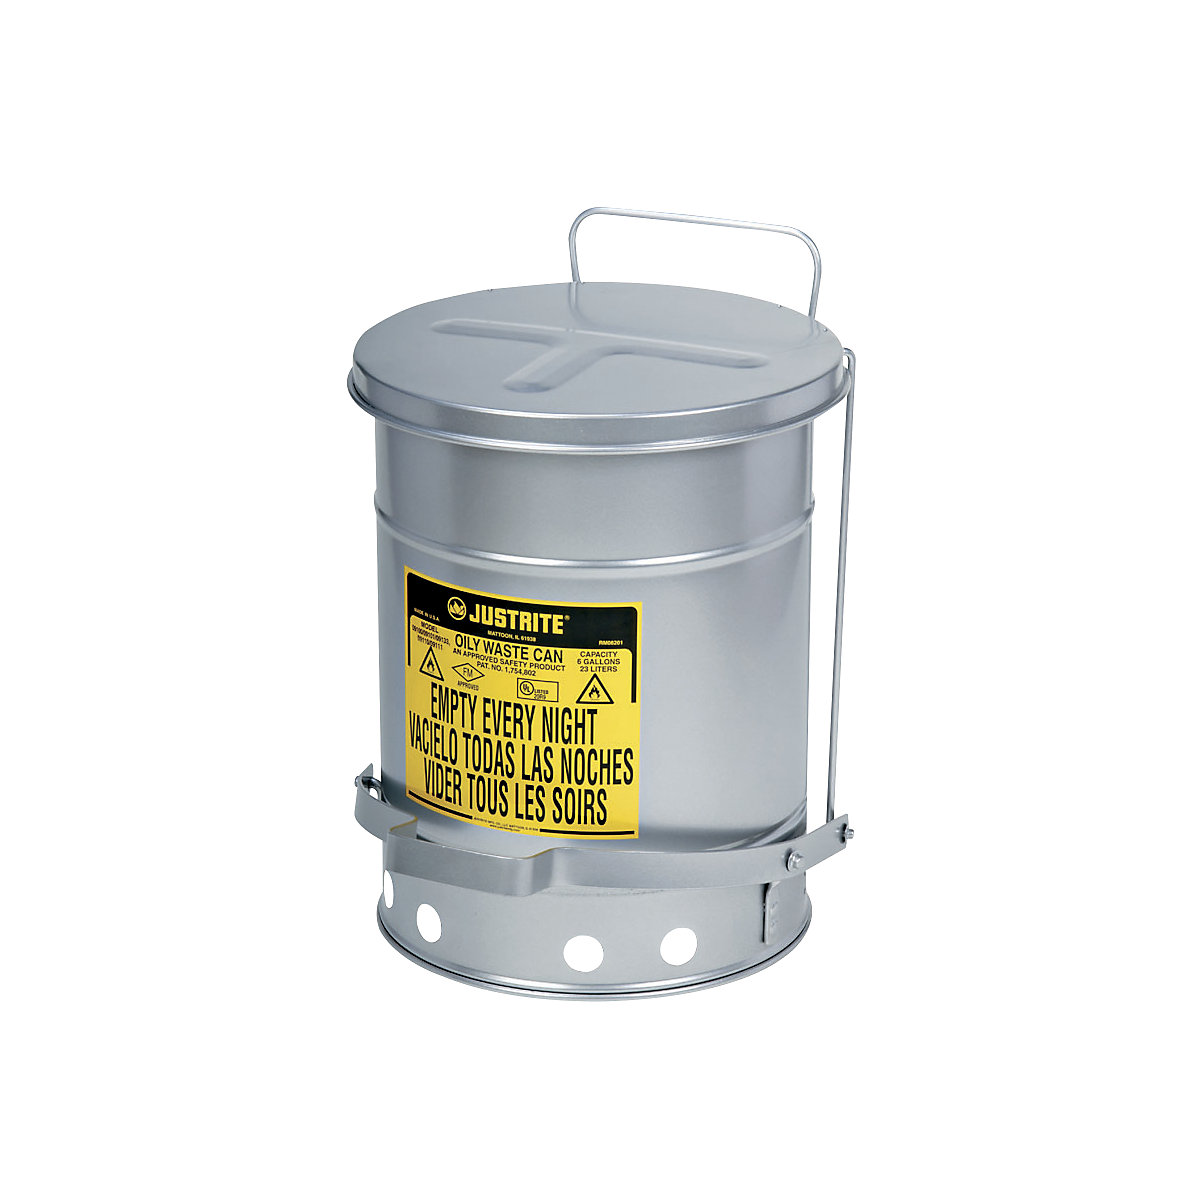 Varnostne posode za odpadke SoundGard™, z zmanjšanim hrupom – Justrite, zapiranje pokrova dušeno in tiho, srebrno lakiranje, prostornina 80 l-8